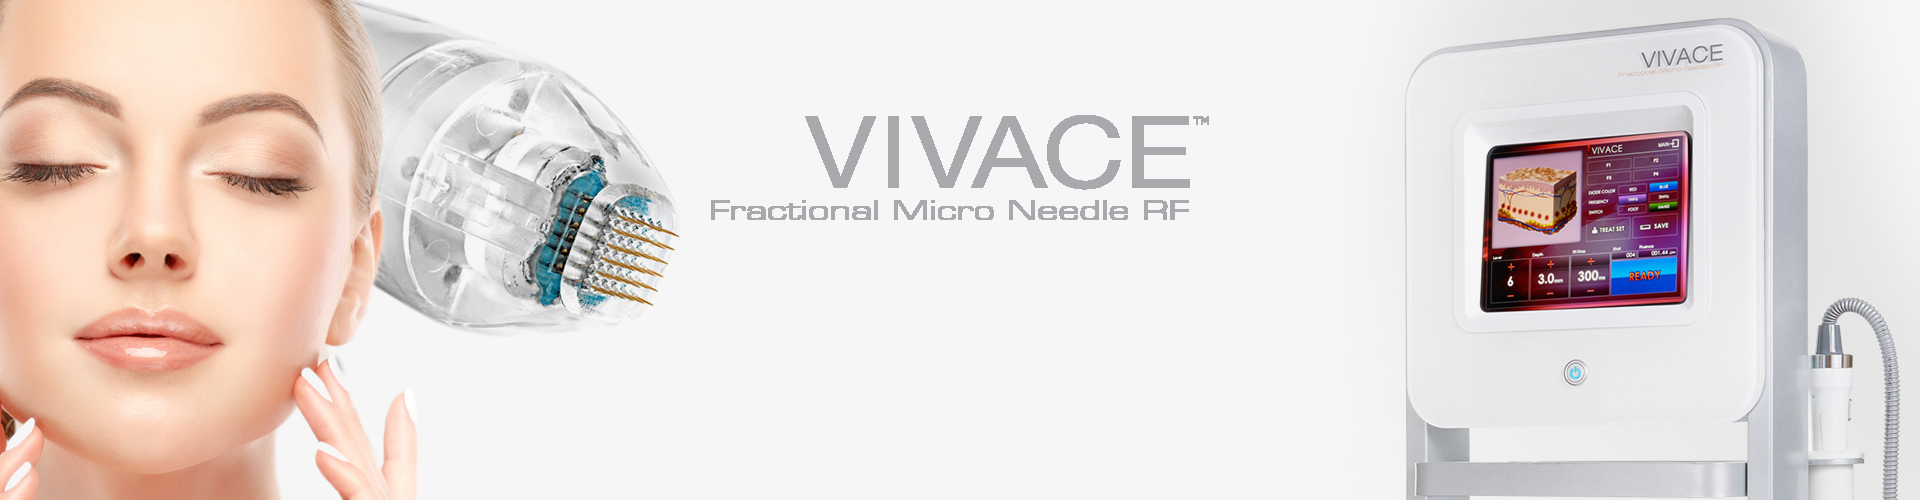 VIVACE RF Microneedling